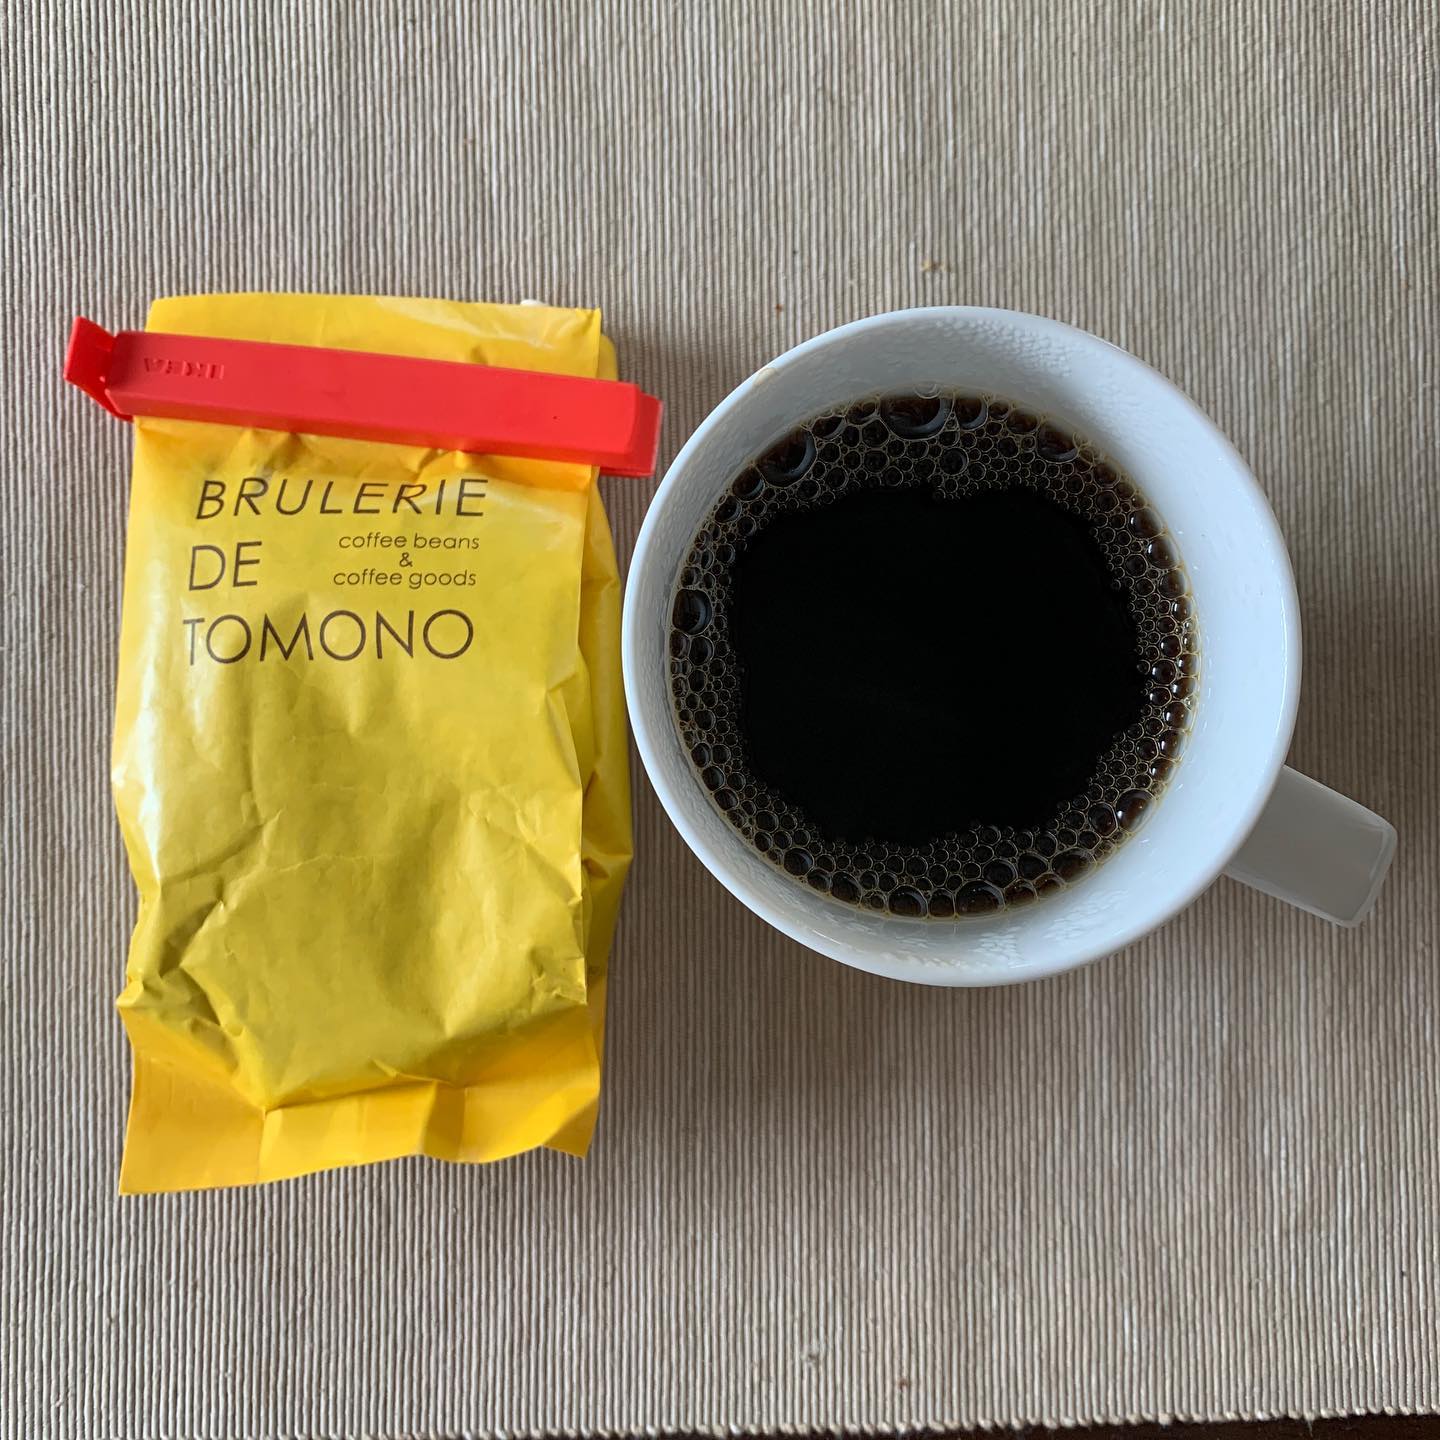 家で仕事してるとちゃんとしたコーヒー飲めるの嬉しい。今回は「クラシコトモノウ」と「トリコロール」の2種類を飲み比べてます。#tomonocoffee